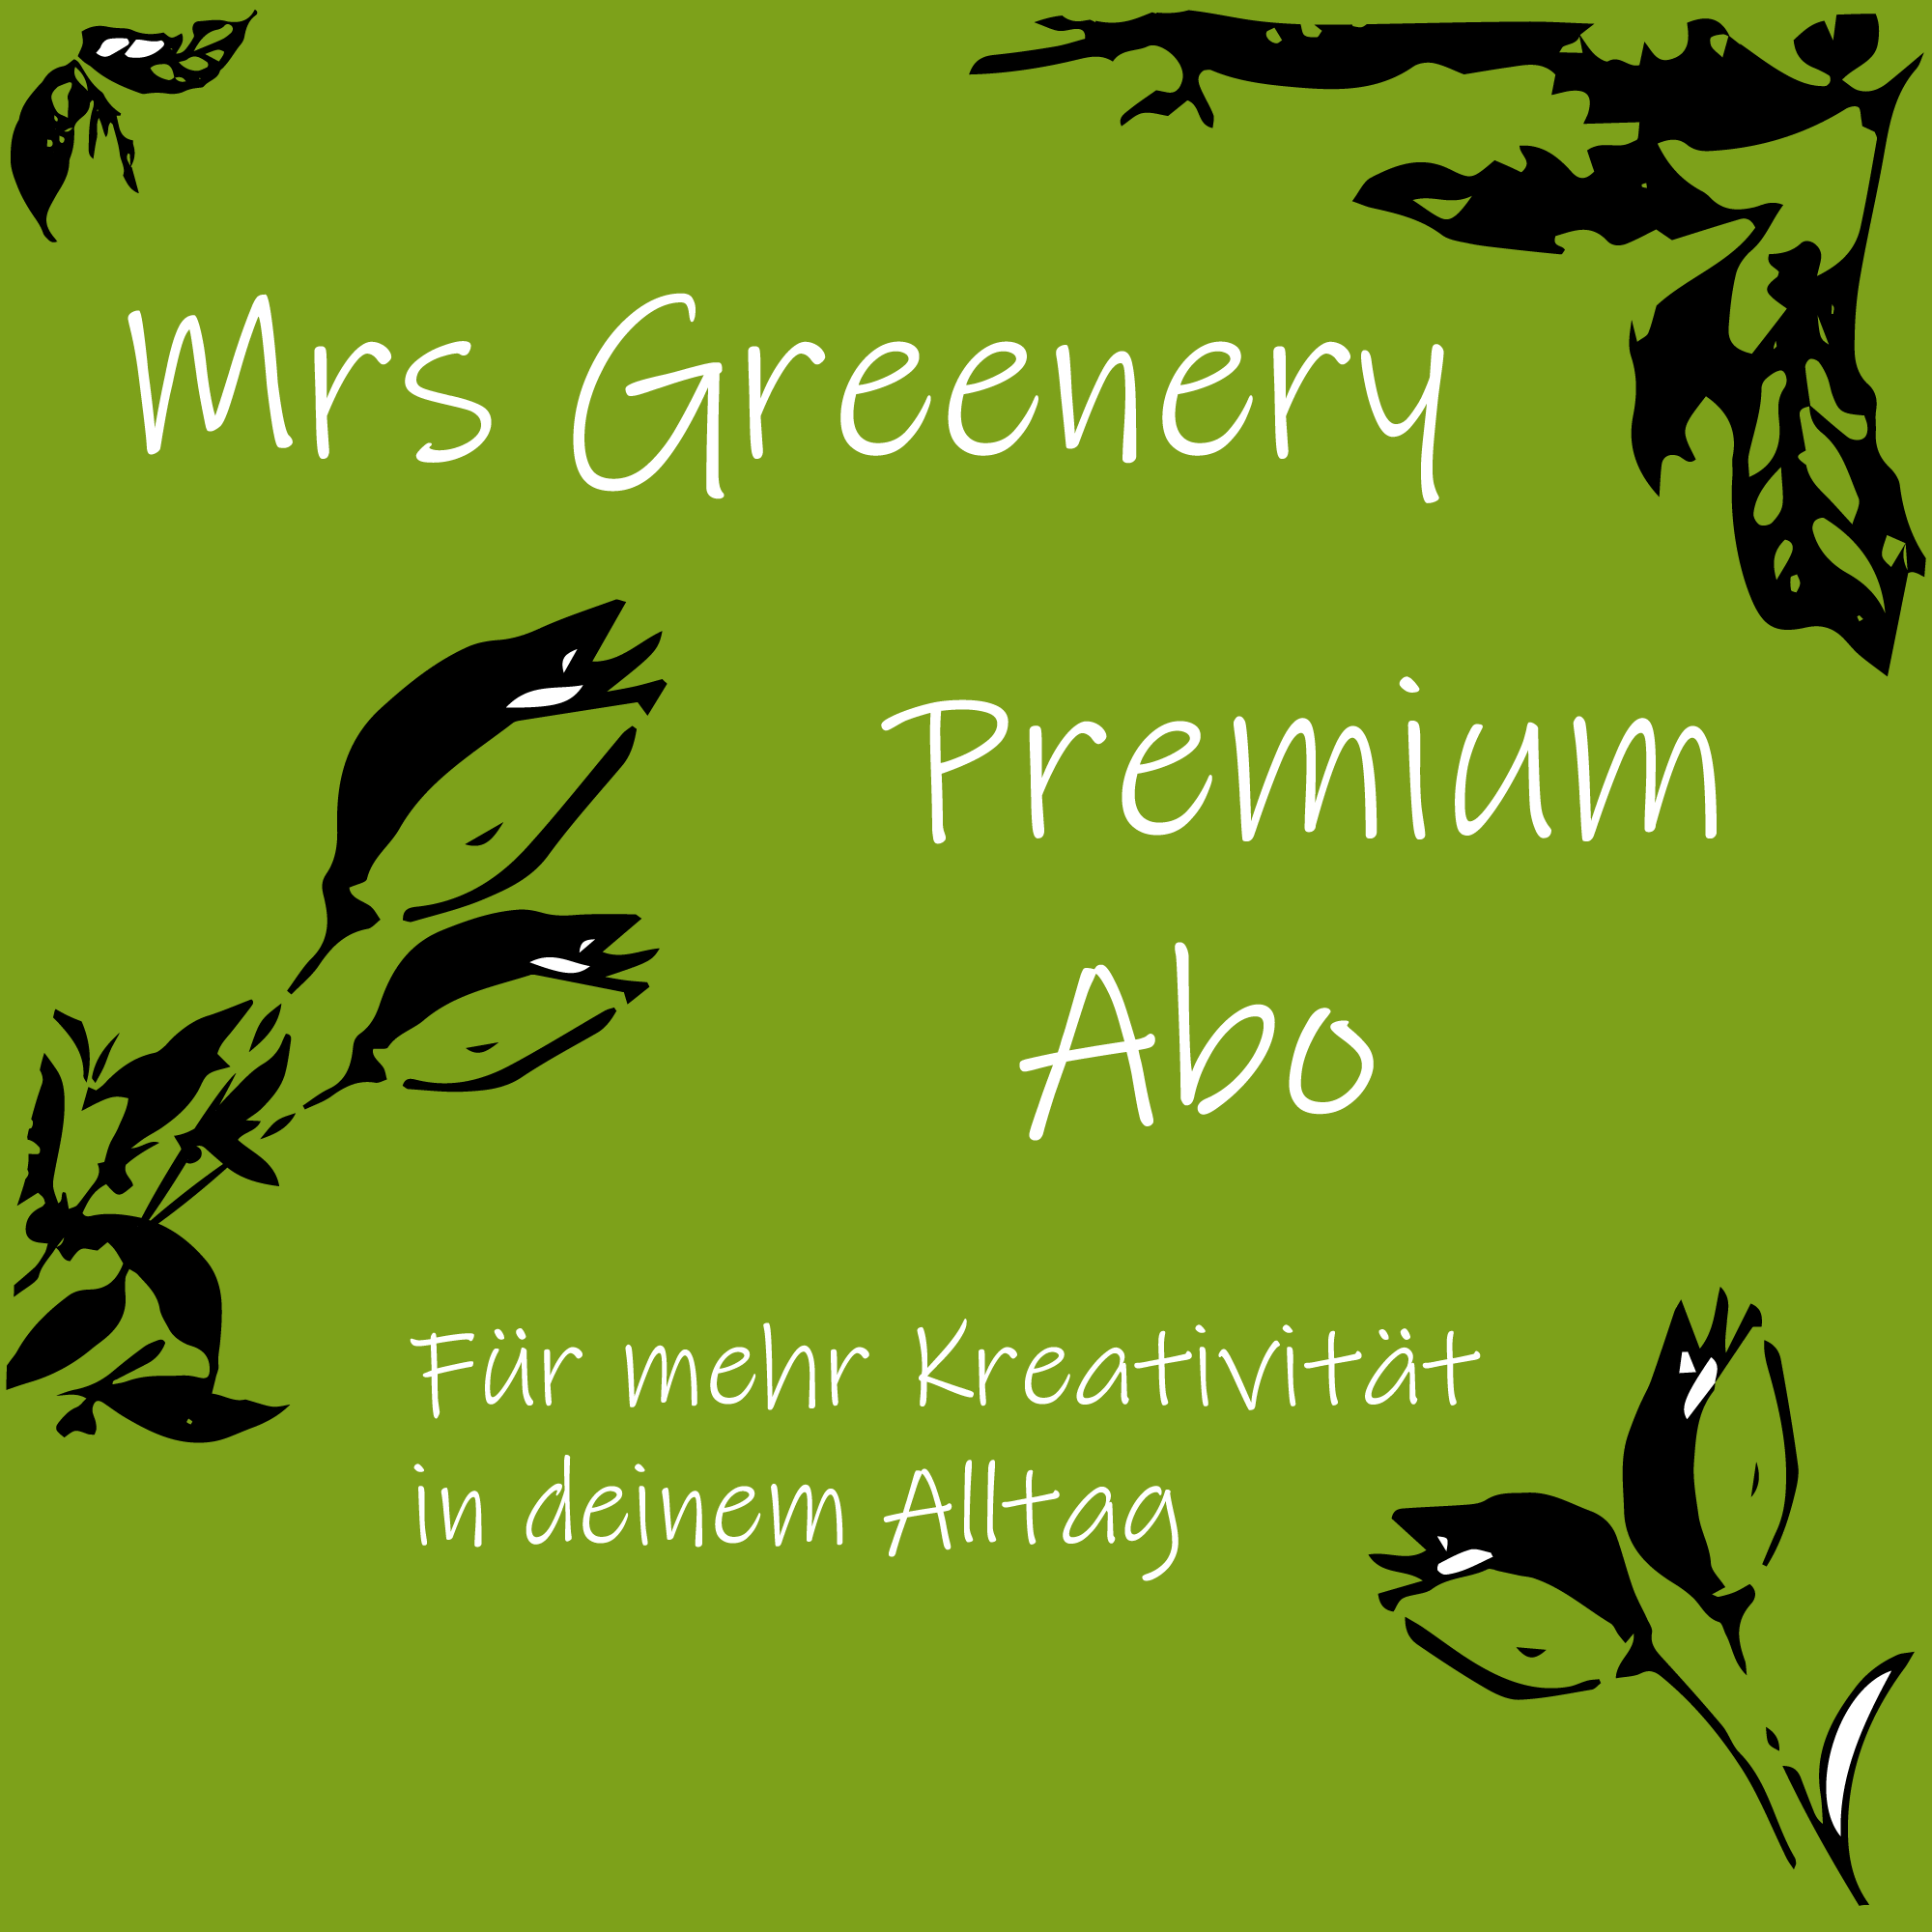 Mrs Greenery Premium Abo